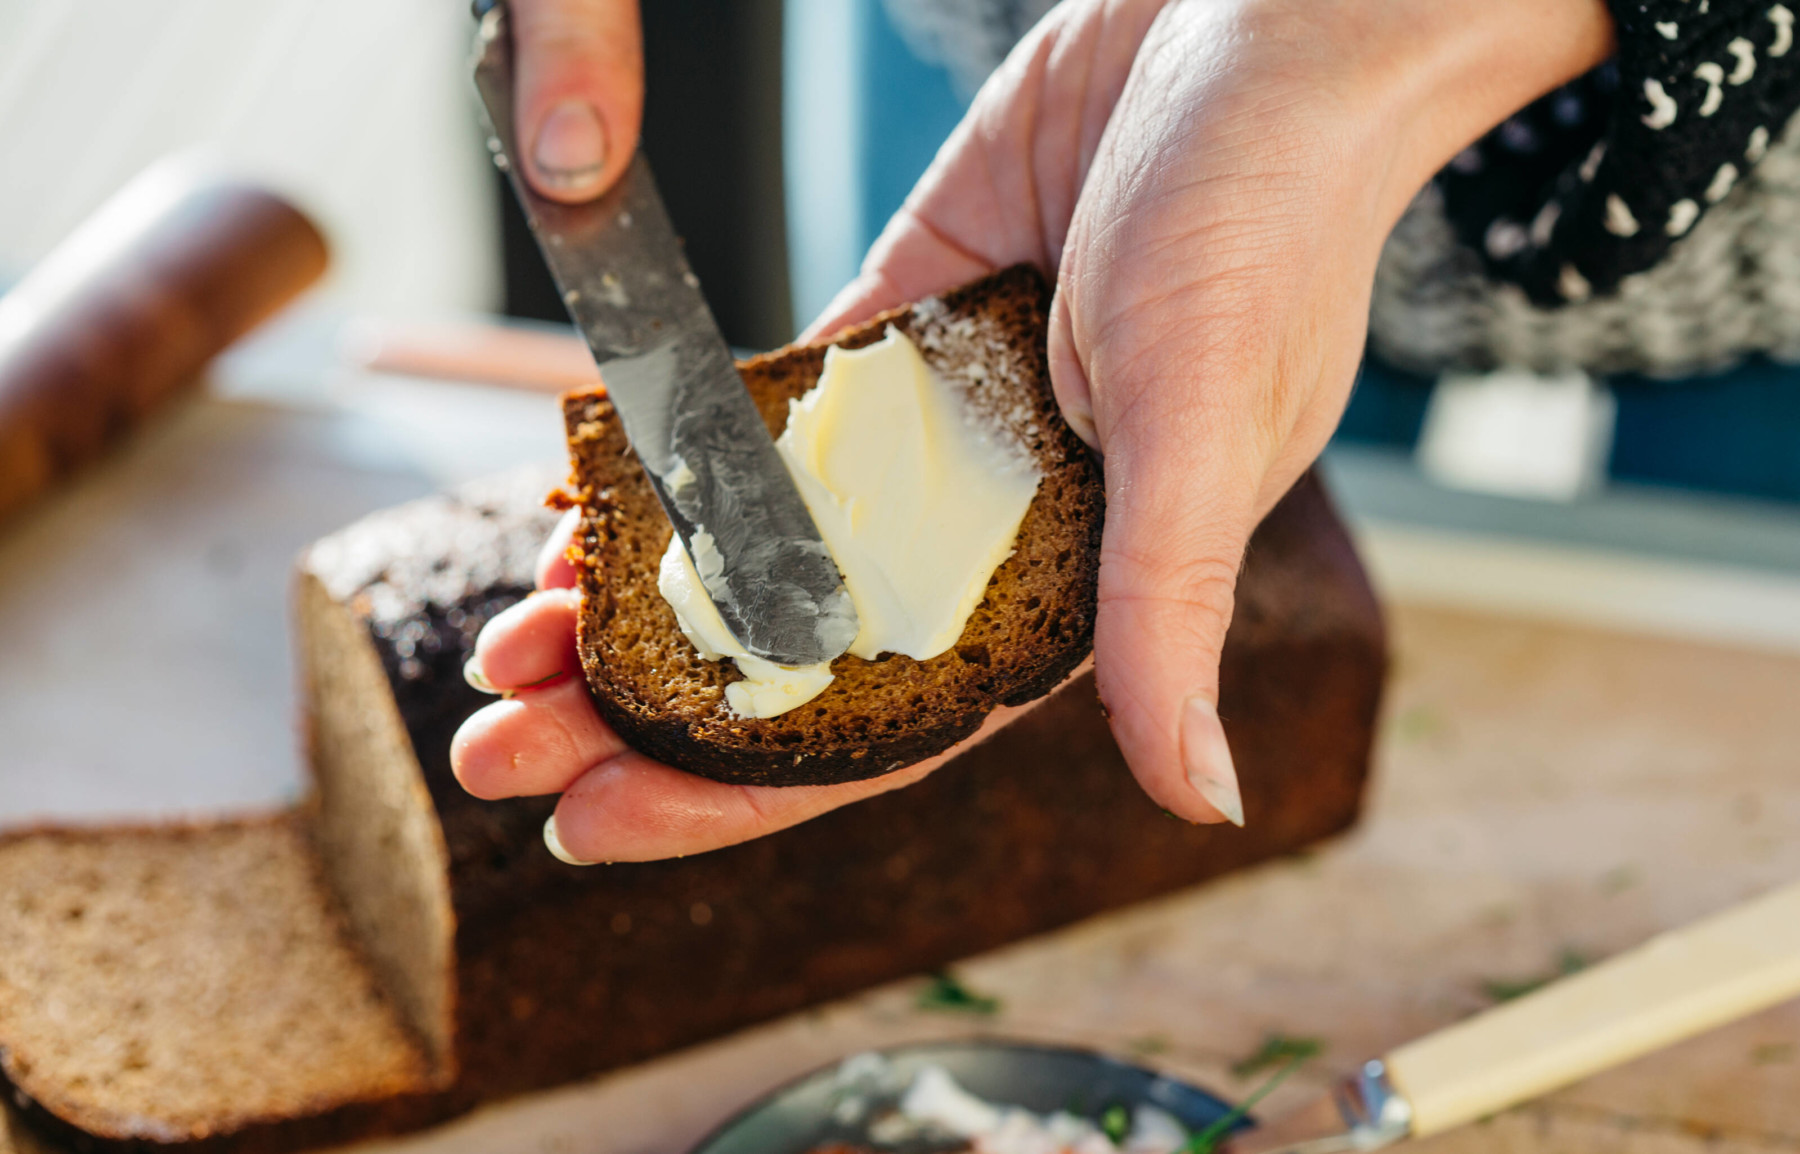 On voit les mains d’une personne en train d’étaler du beurre sur une tranche de pain noir.